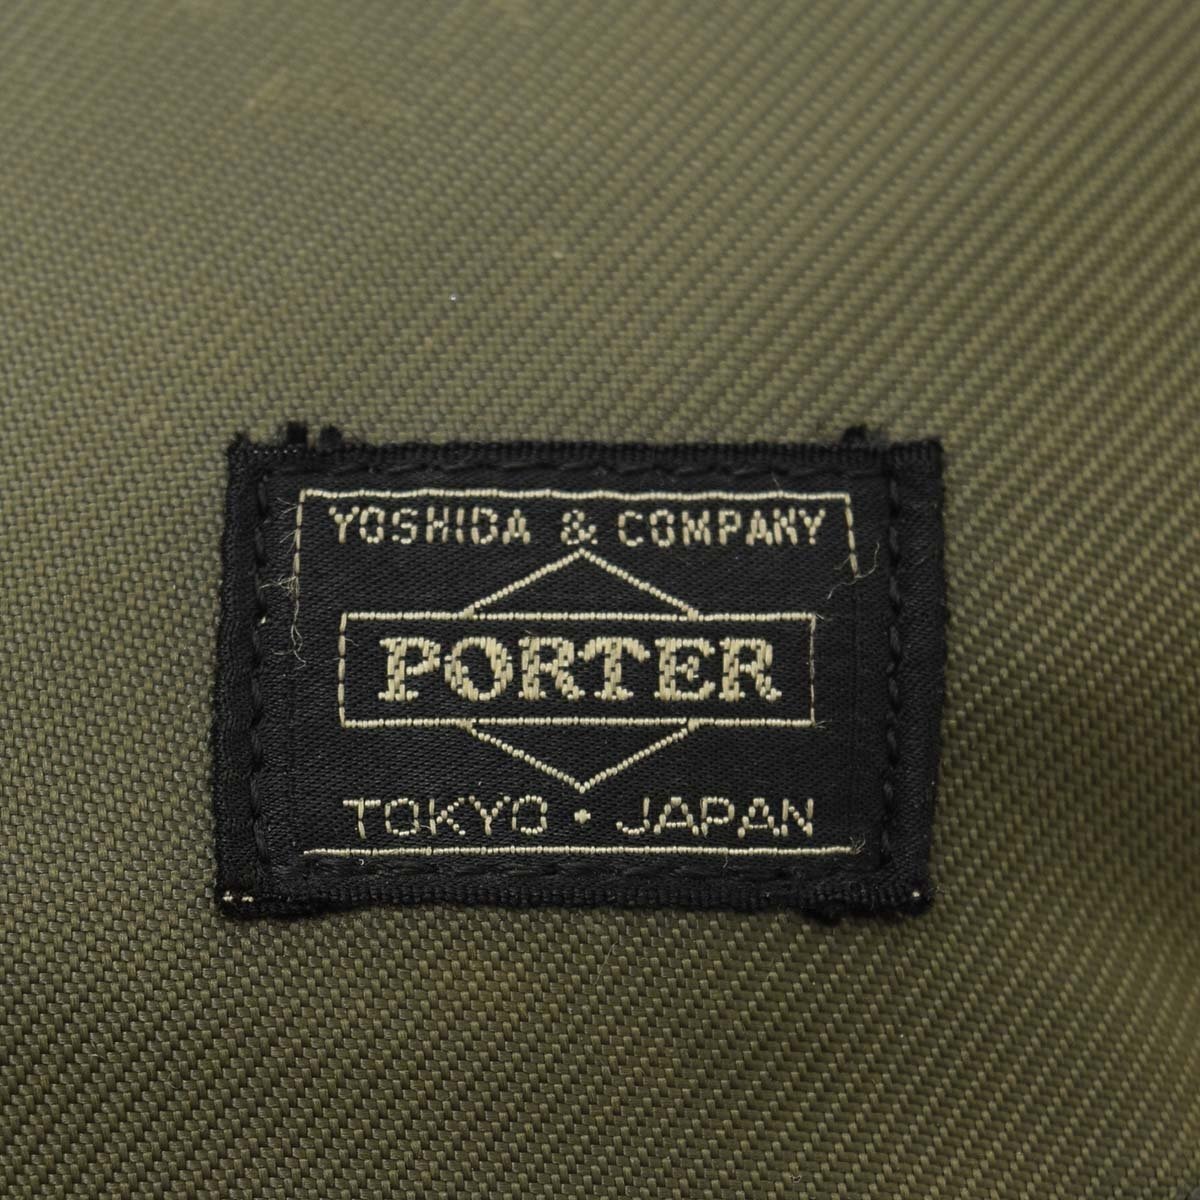 ^513849 PORTER Porter Yoshida bag сумка на плечо нейлон оливковый зеленый 